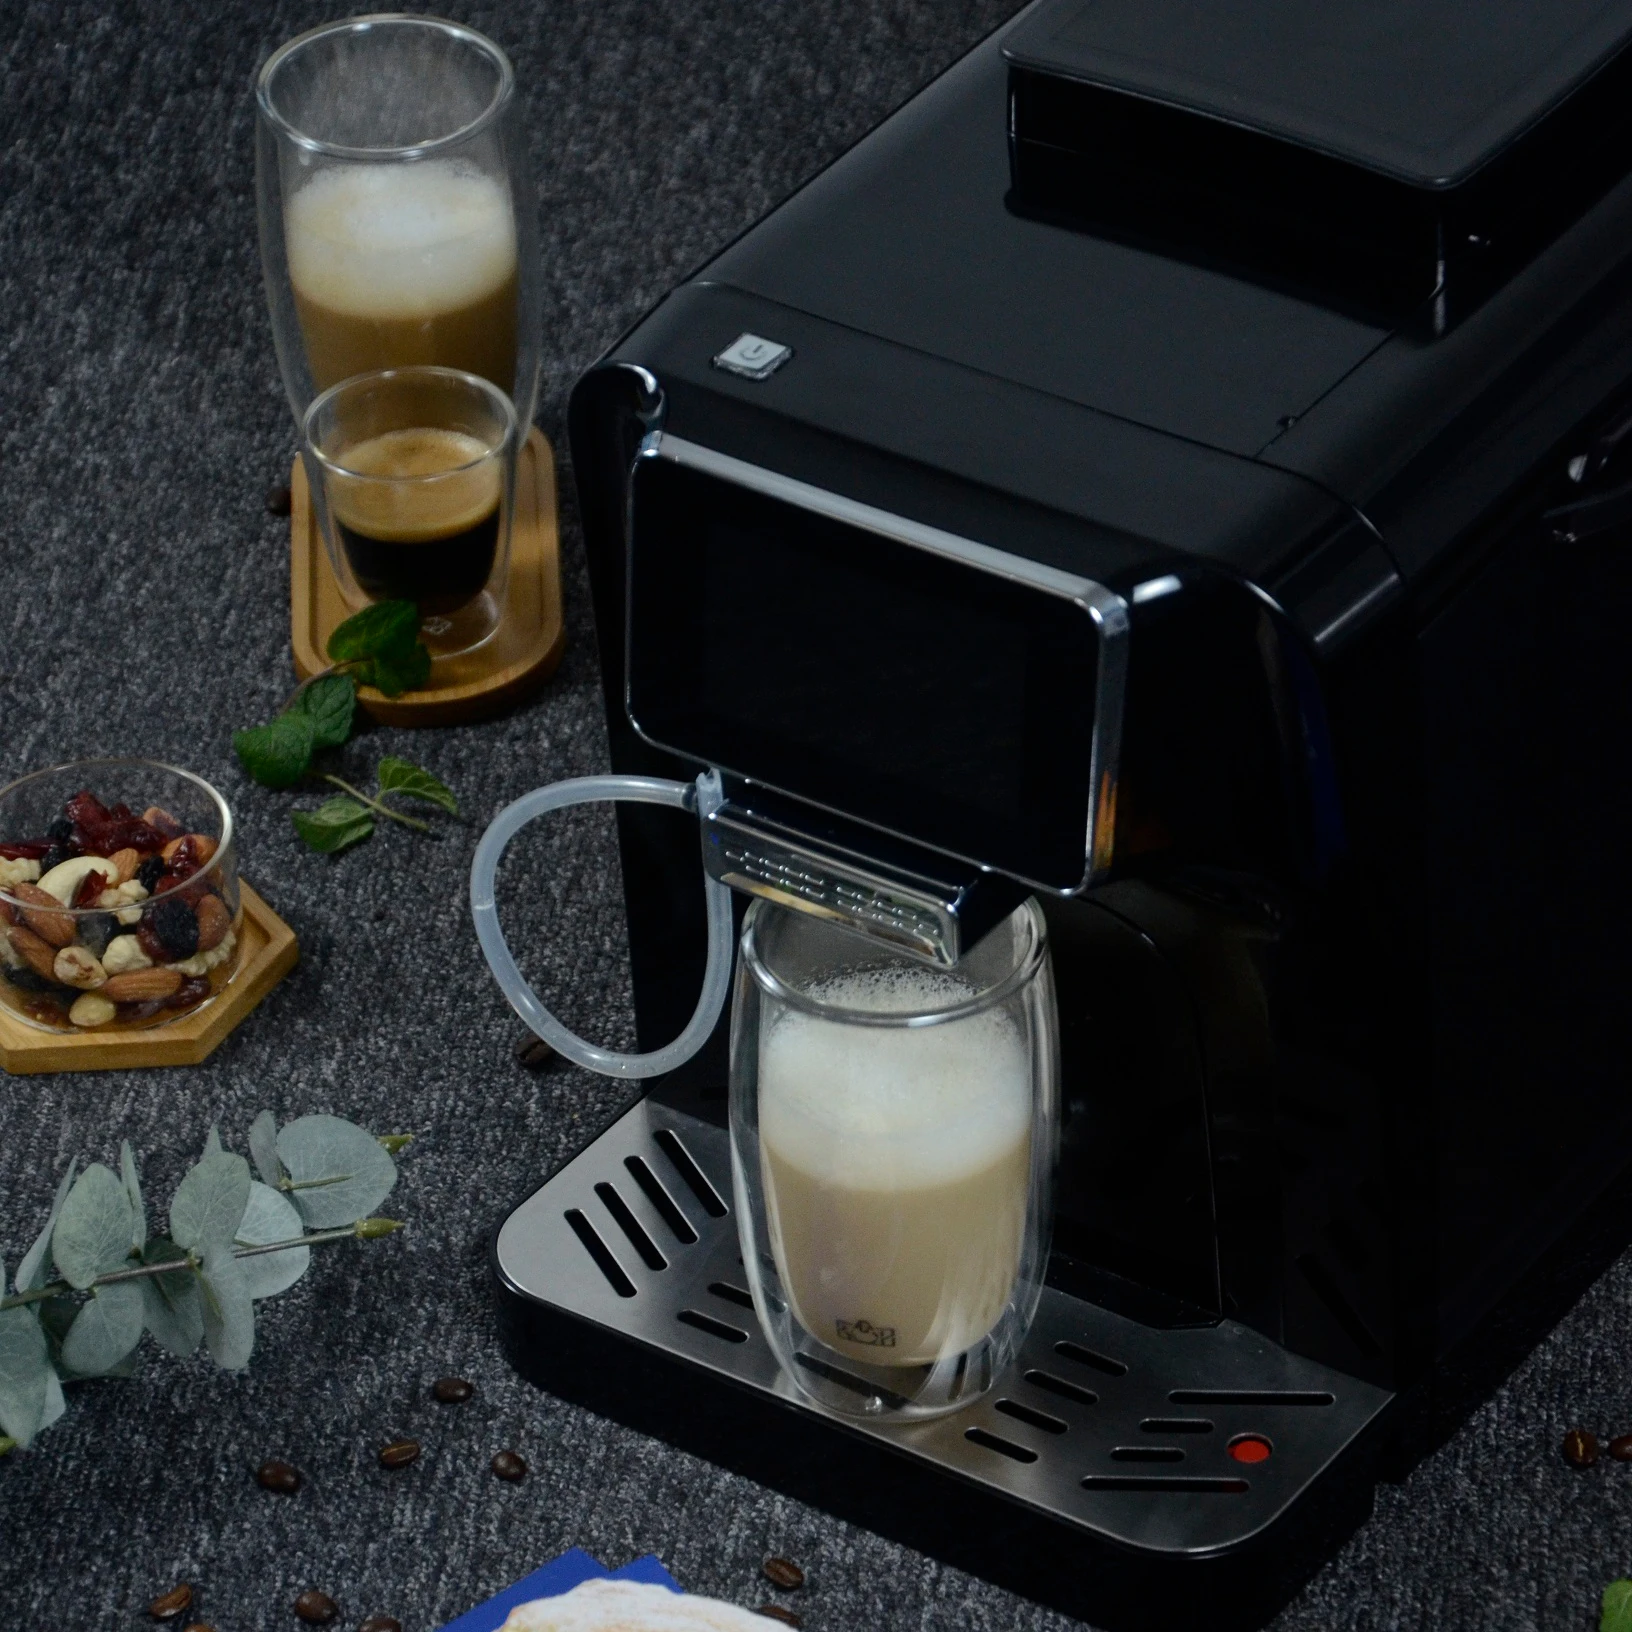 Автоматическая кофемашина для приготовления эспрессо Barista lly/автоматическая кофеварка для приготовления кофе expresso